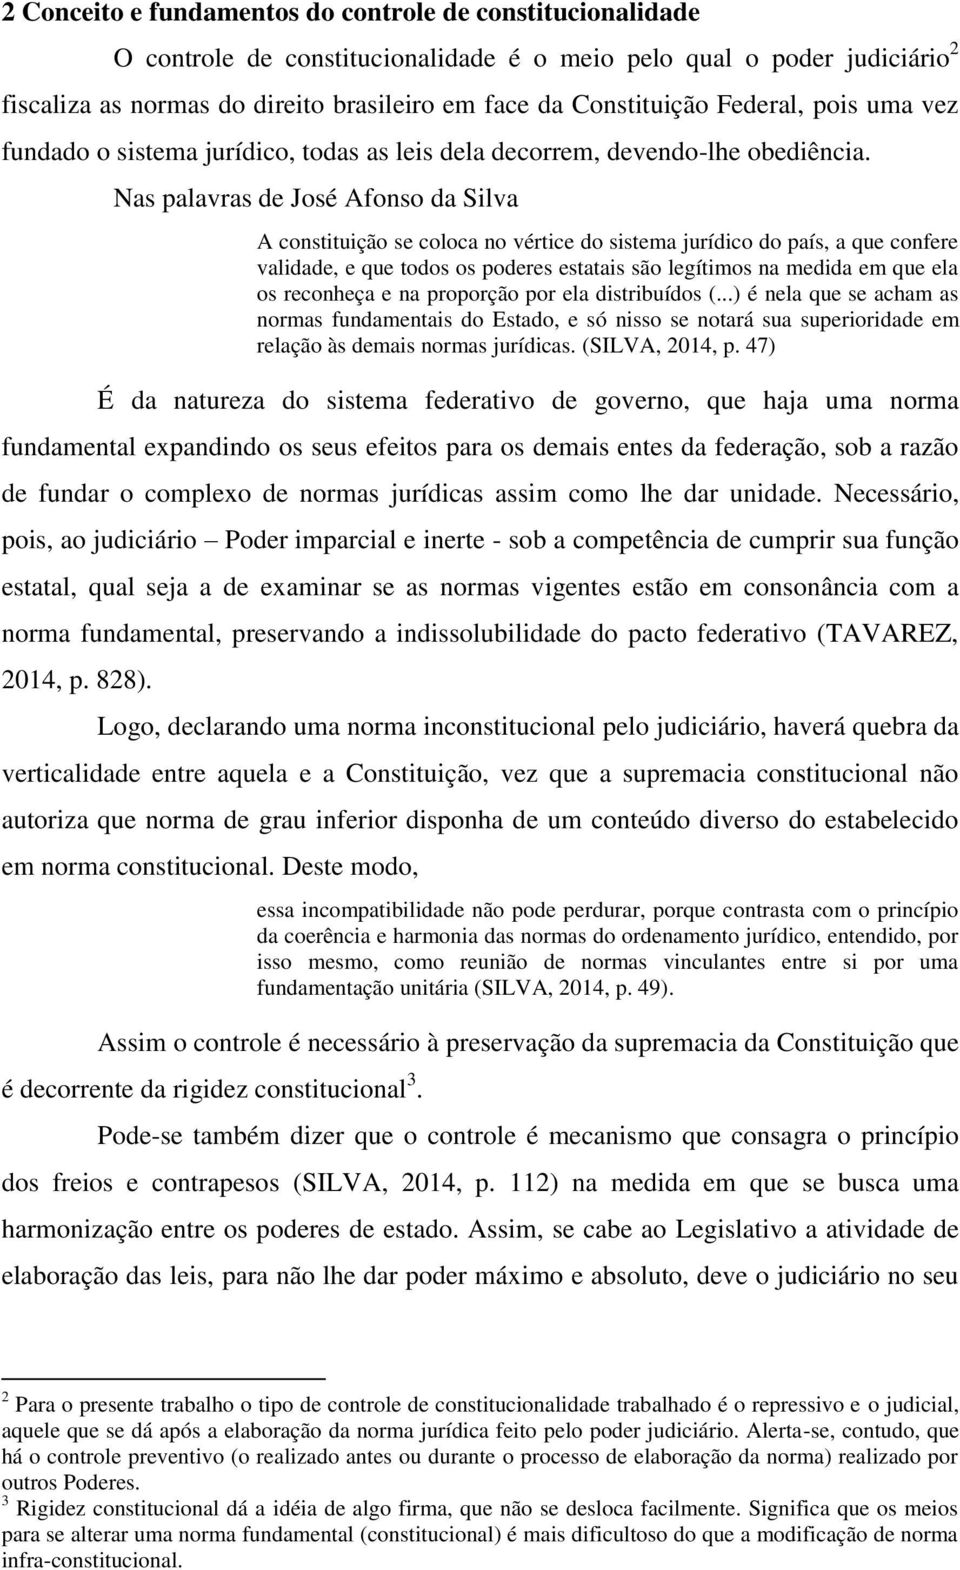 Nas palavras de José Afonso da Silva A constituição se coloca no vértice do sistema jurídico do país, a que confere validade, e que todos os poderes estatais são legítimos na medida em que ela os